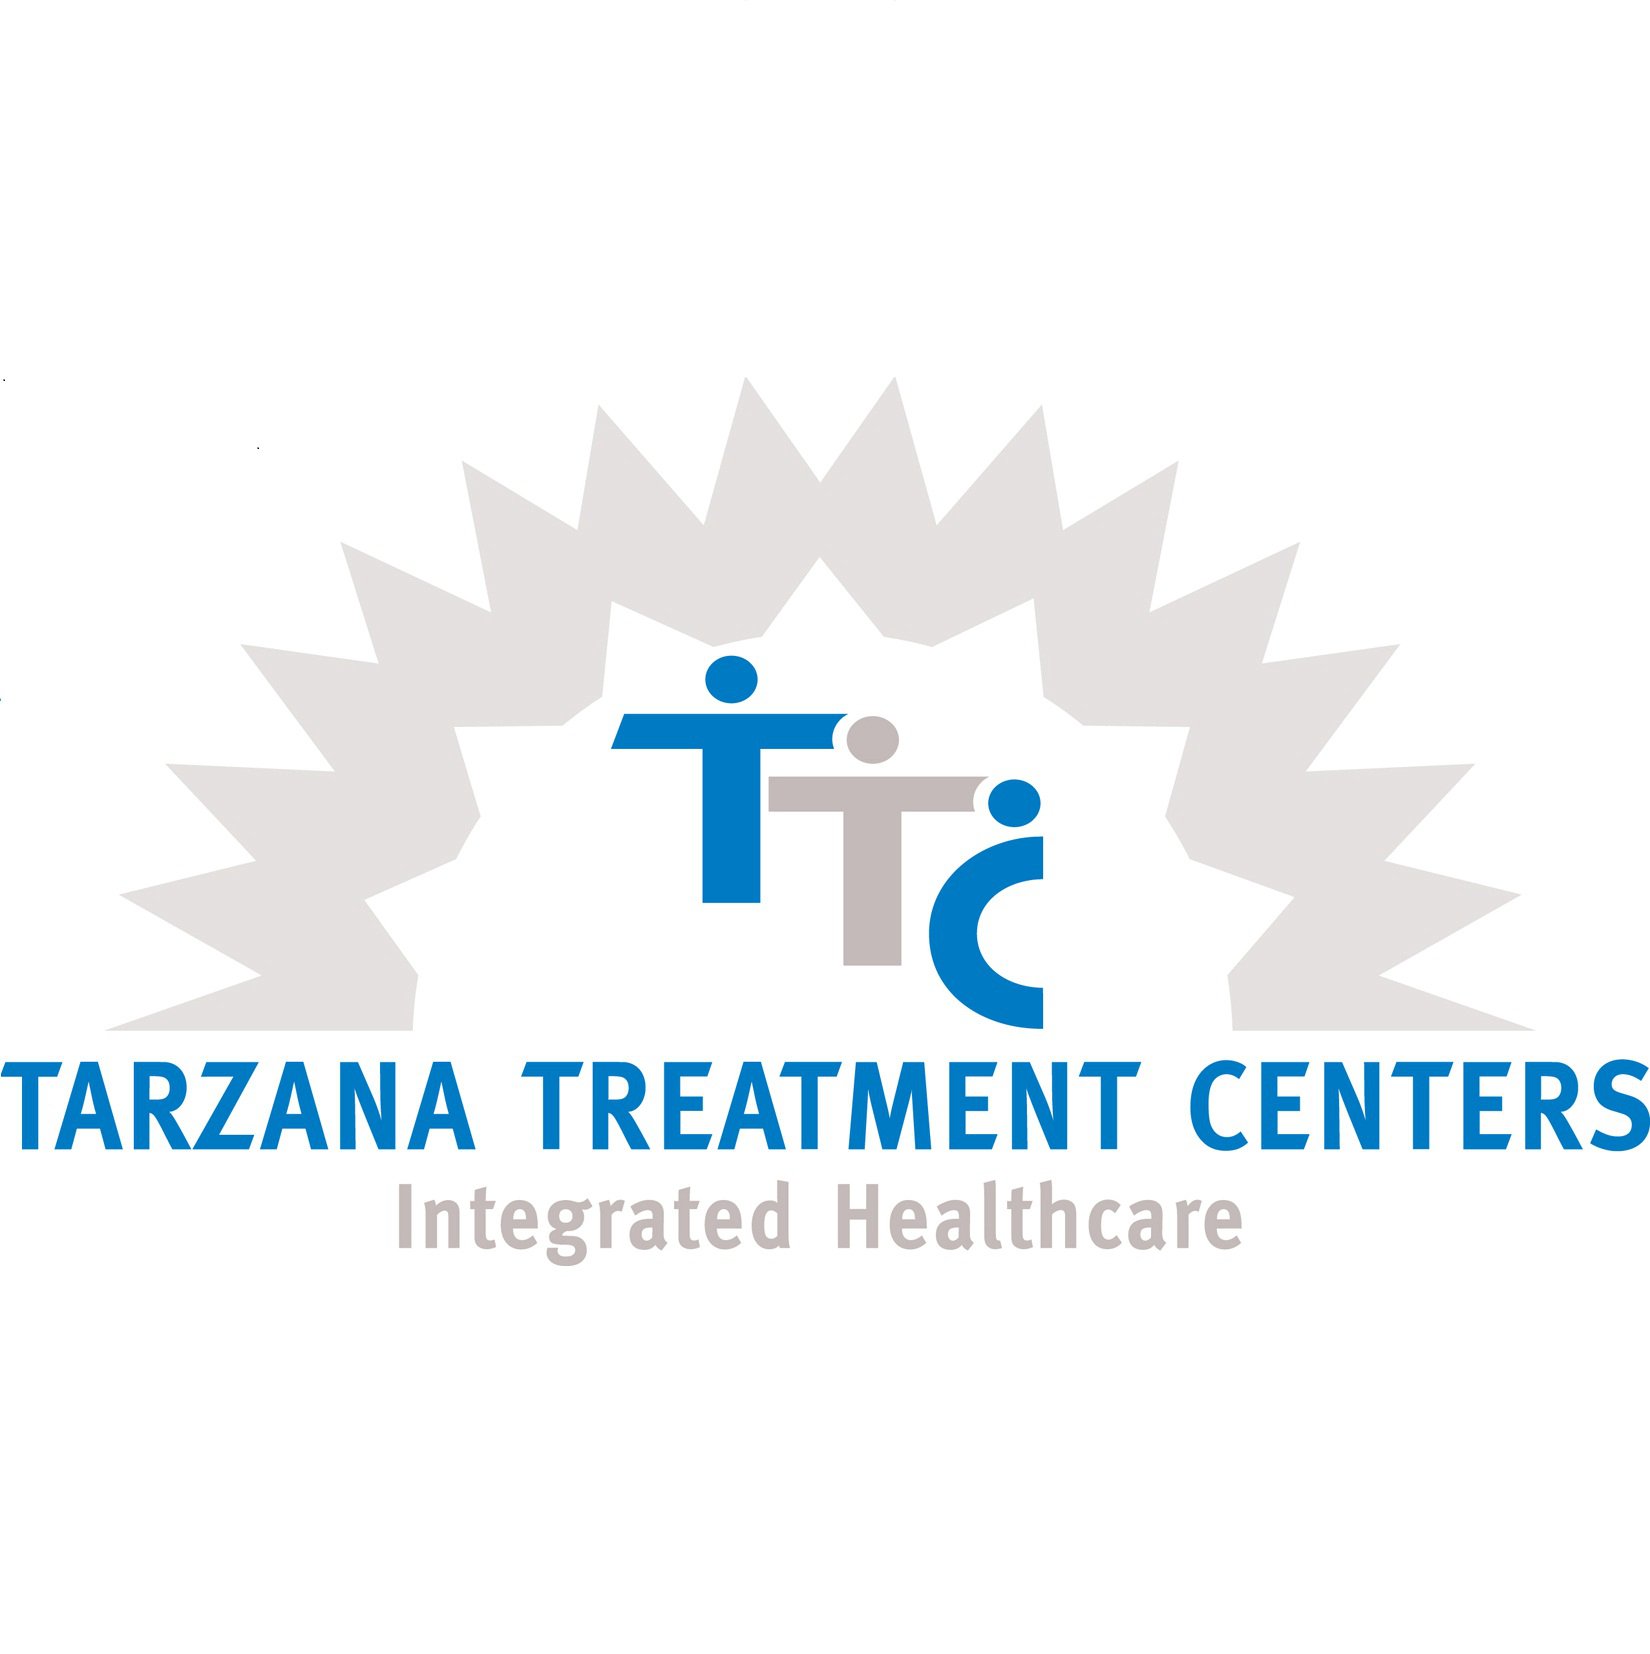 Tarzana Treatment Centers Oxnard St Tarazana